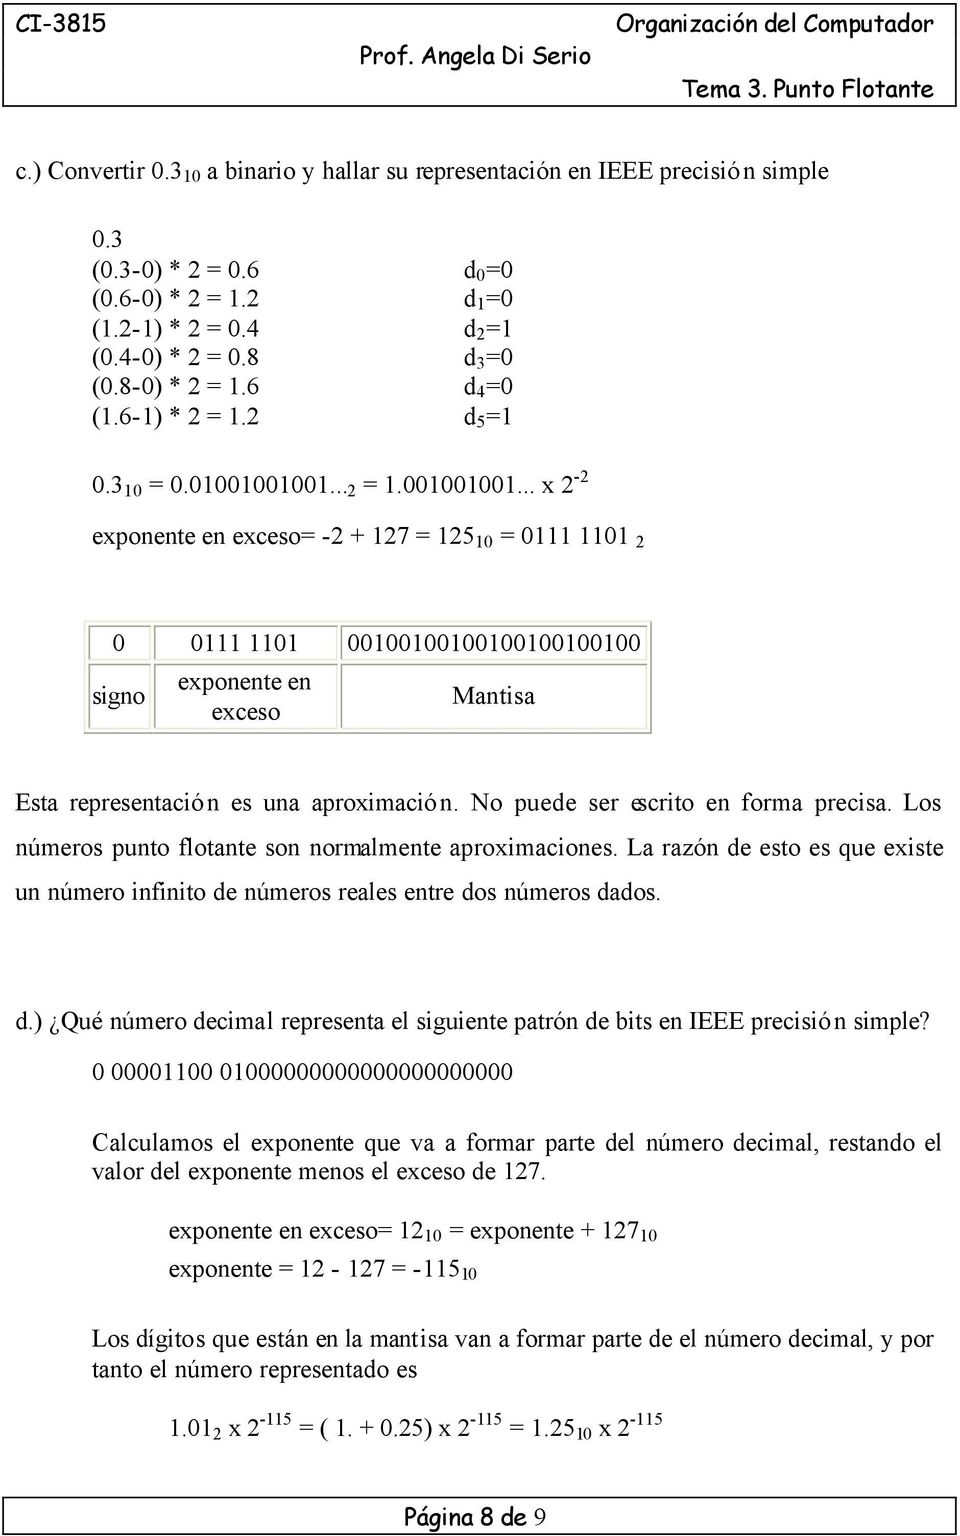 No puede ser escrito en forma precisa. Los números punto flotante son normalmente aproximaciones. La razón de esto es que existe un número infinito de números reales entre dos números dados. d.) Qué número decimal representa el siguiente patrón de bits en IEEE precisión simple?